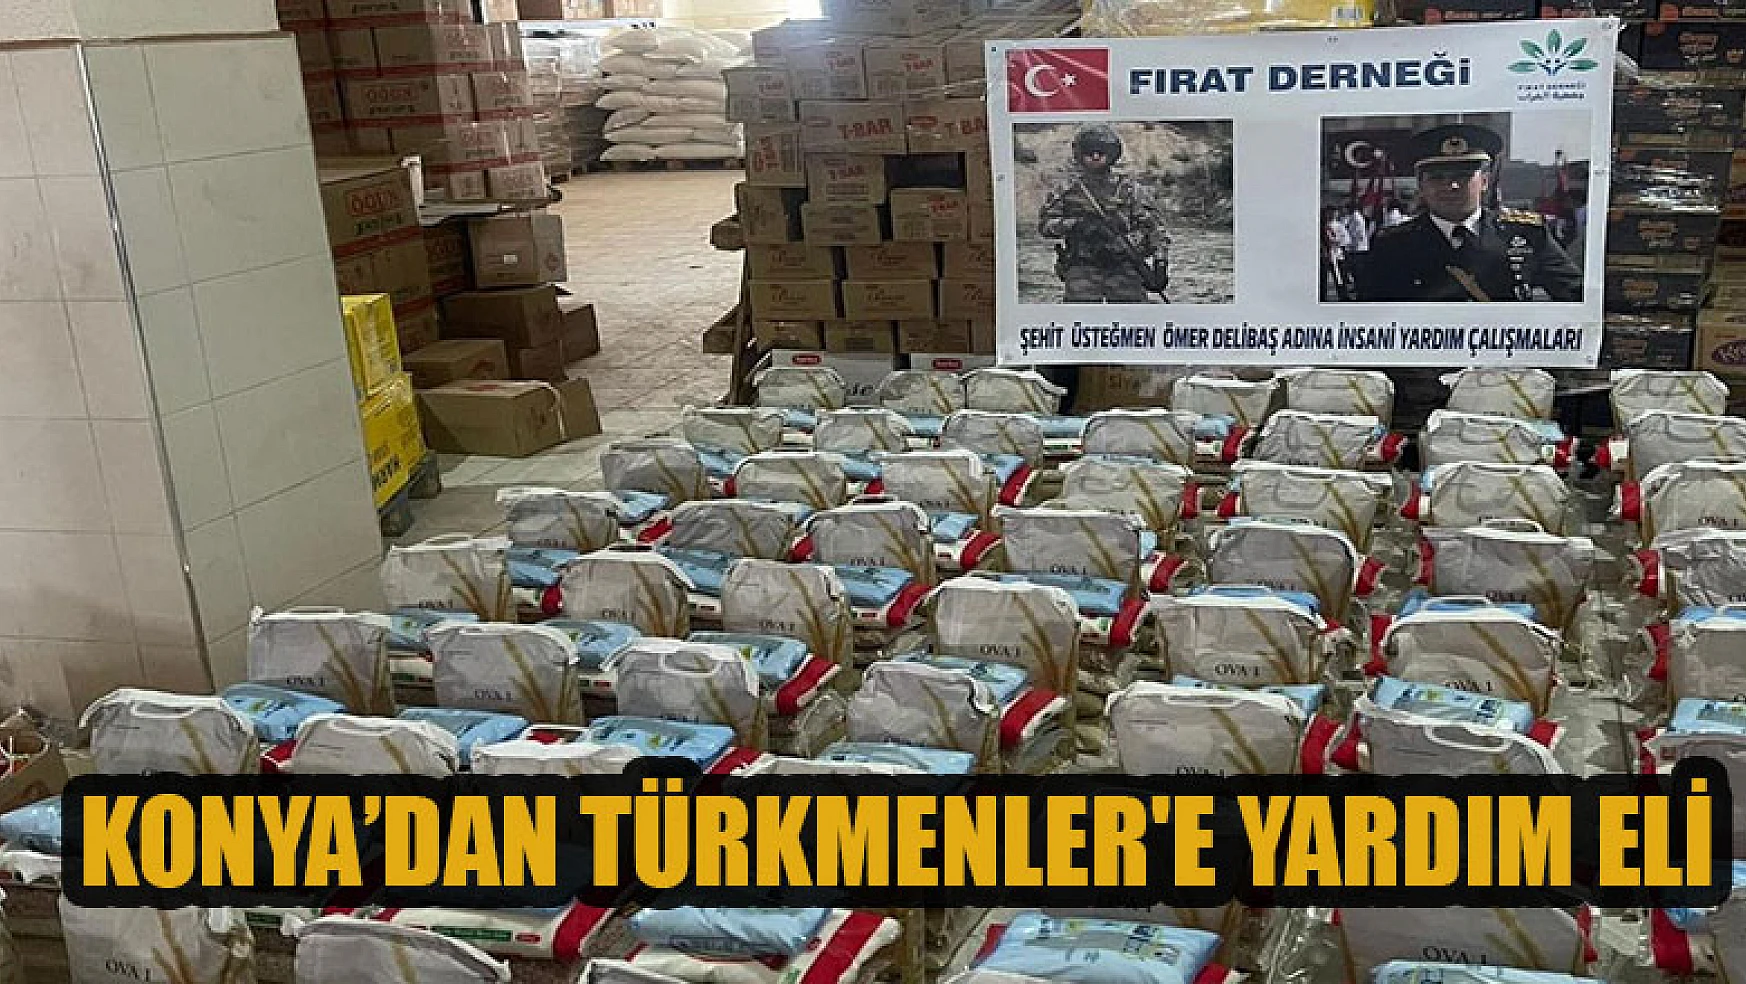 Konya'dan Türkmenler'e yardım eli